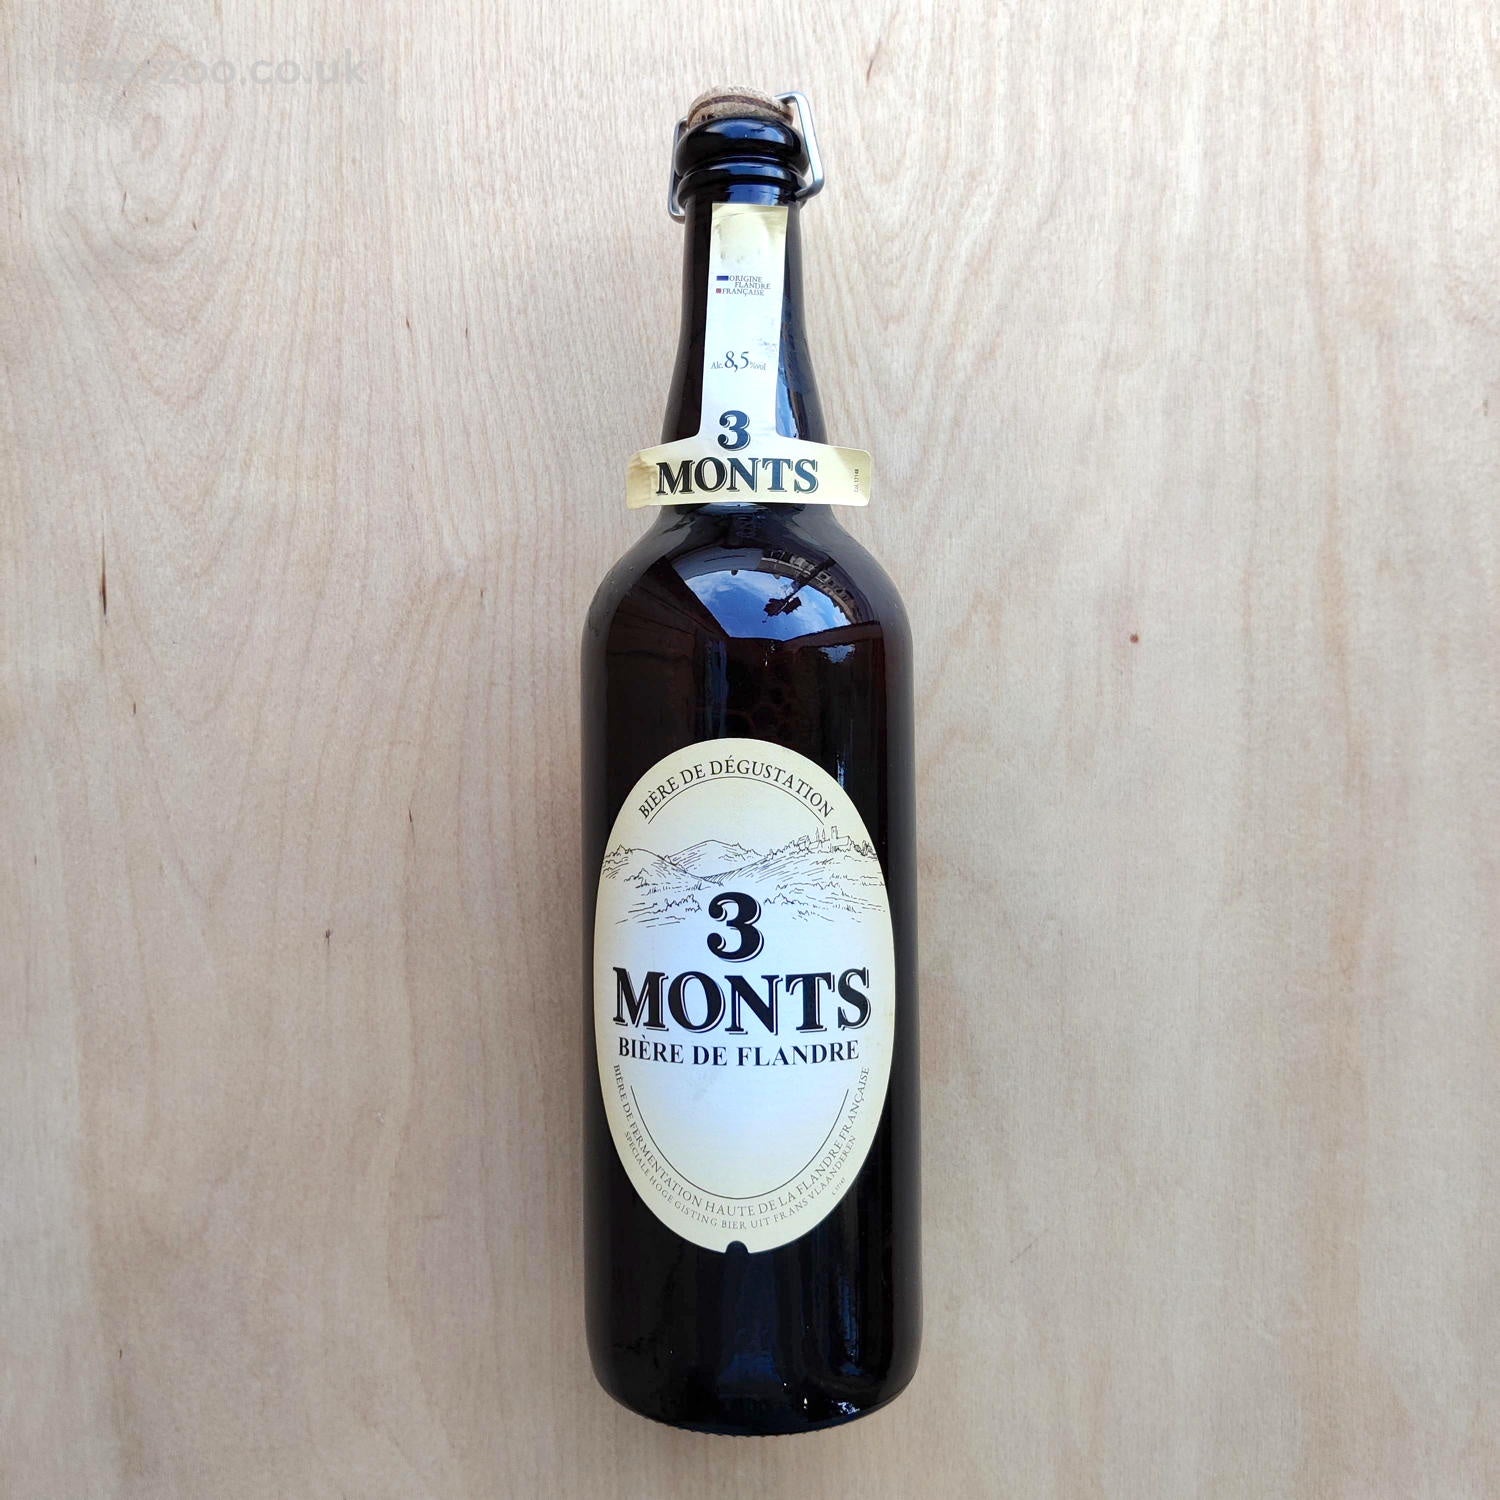 3 Monts - Biere de Flandre 8.5% (750ml)